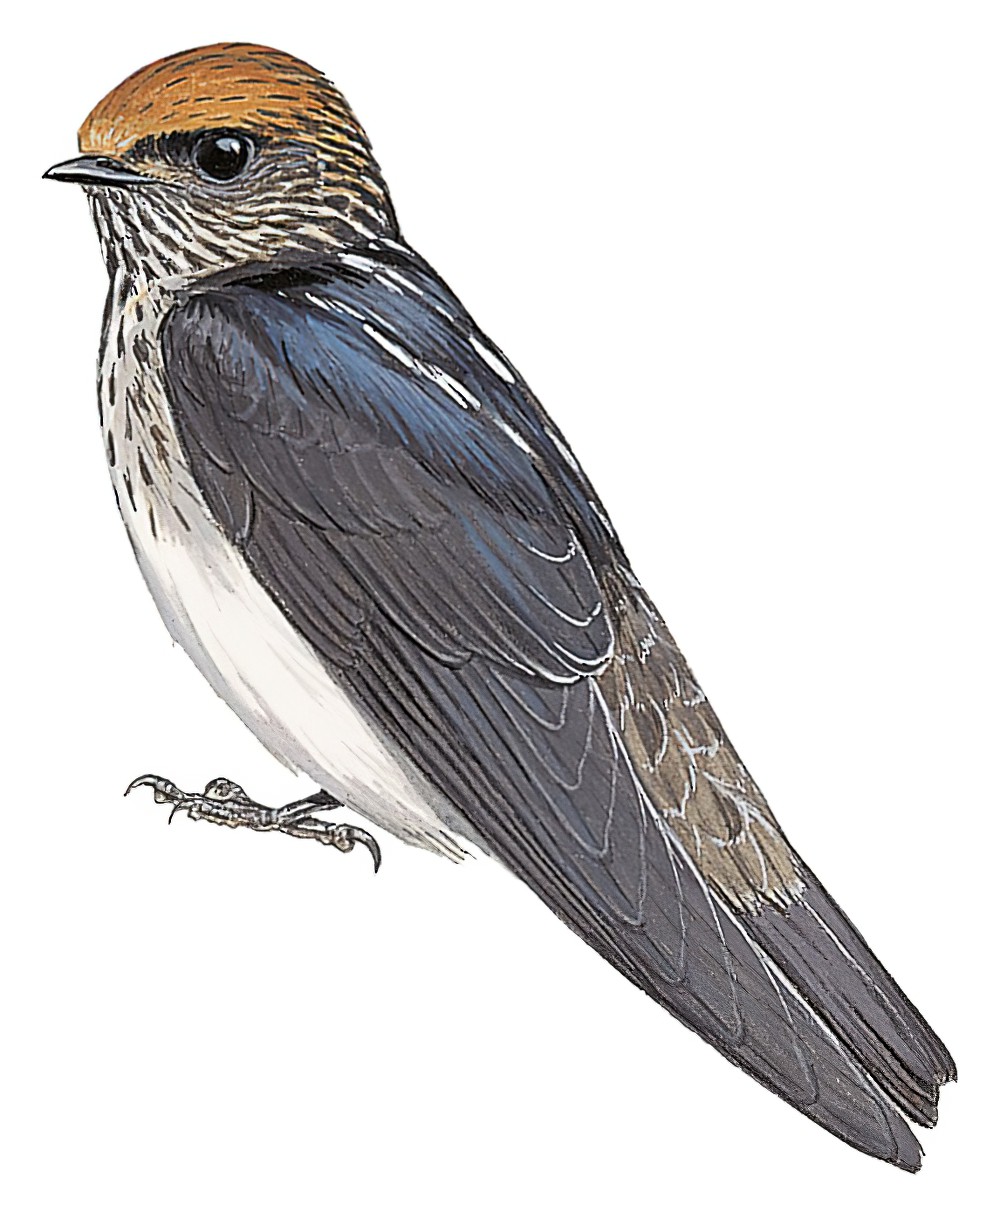 黄额燕 / Streak-throated Swallow / Petrochelidon fluvicola